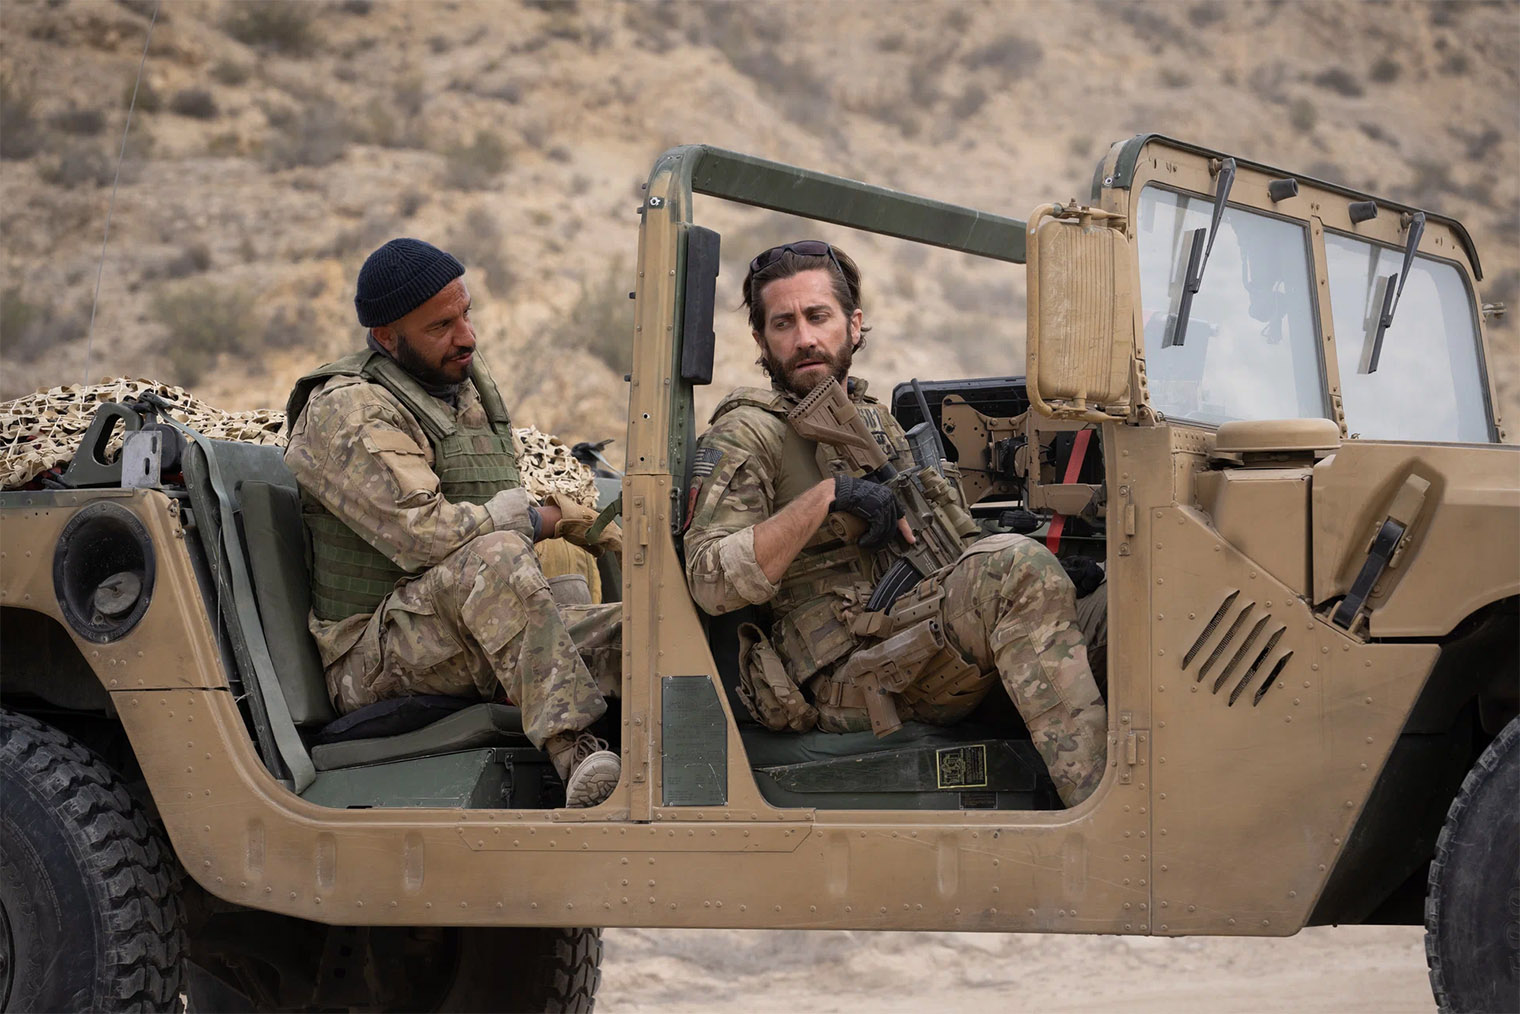 Частично «Переводчик» основан на реальном событии — уходе американской армии из Афганистана в 2021 году. Кадр: STX Films